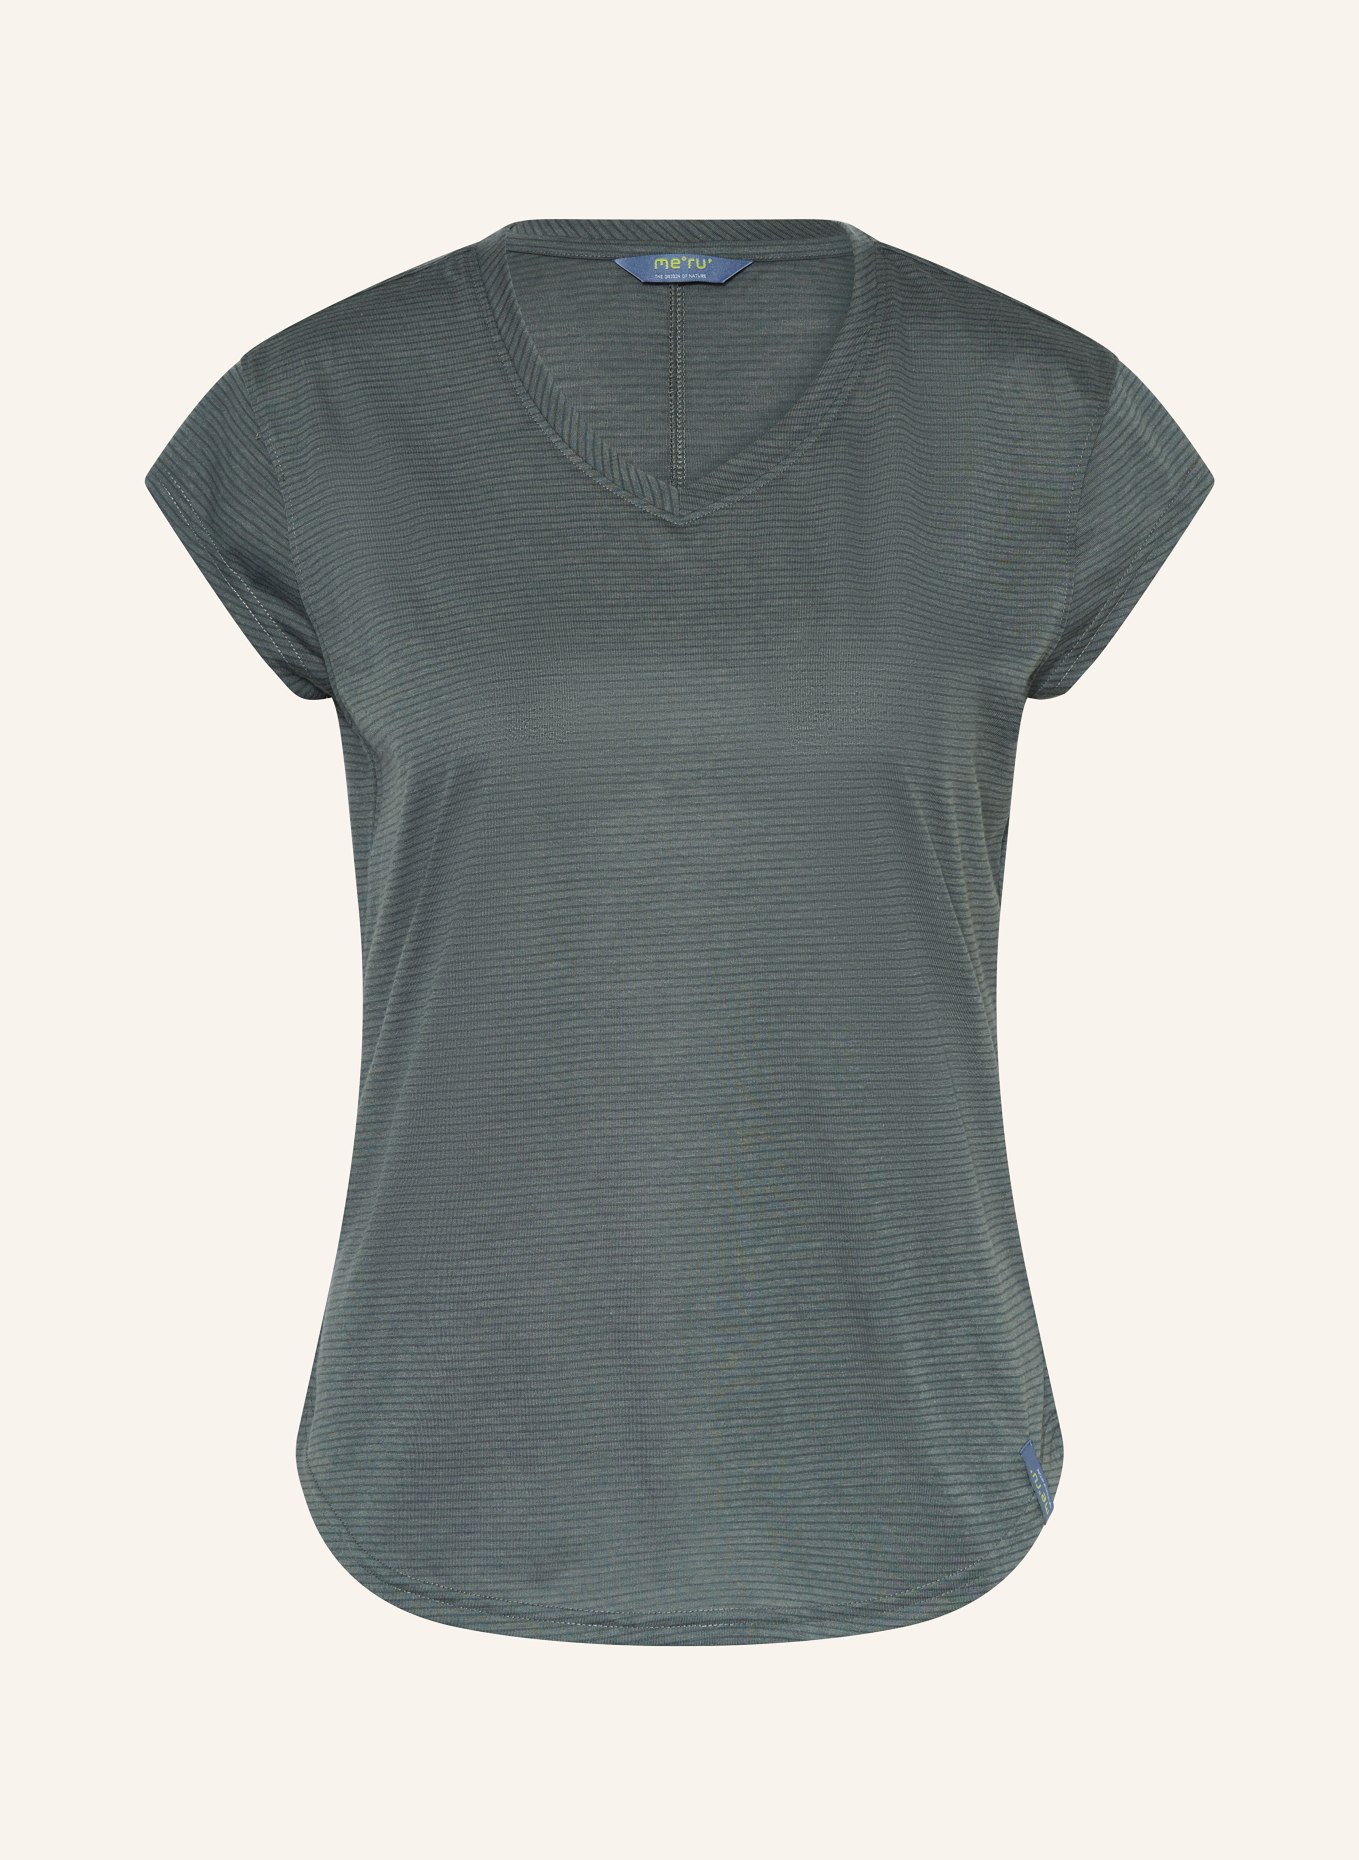 me°ru' T-Shirt RUNDU, Farbe: OLIV/ GRÜN (Bild 1)